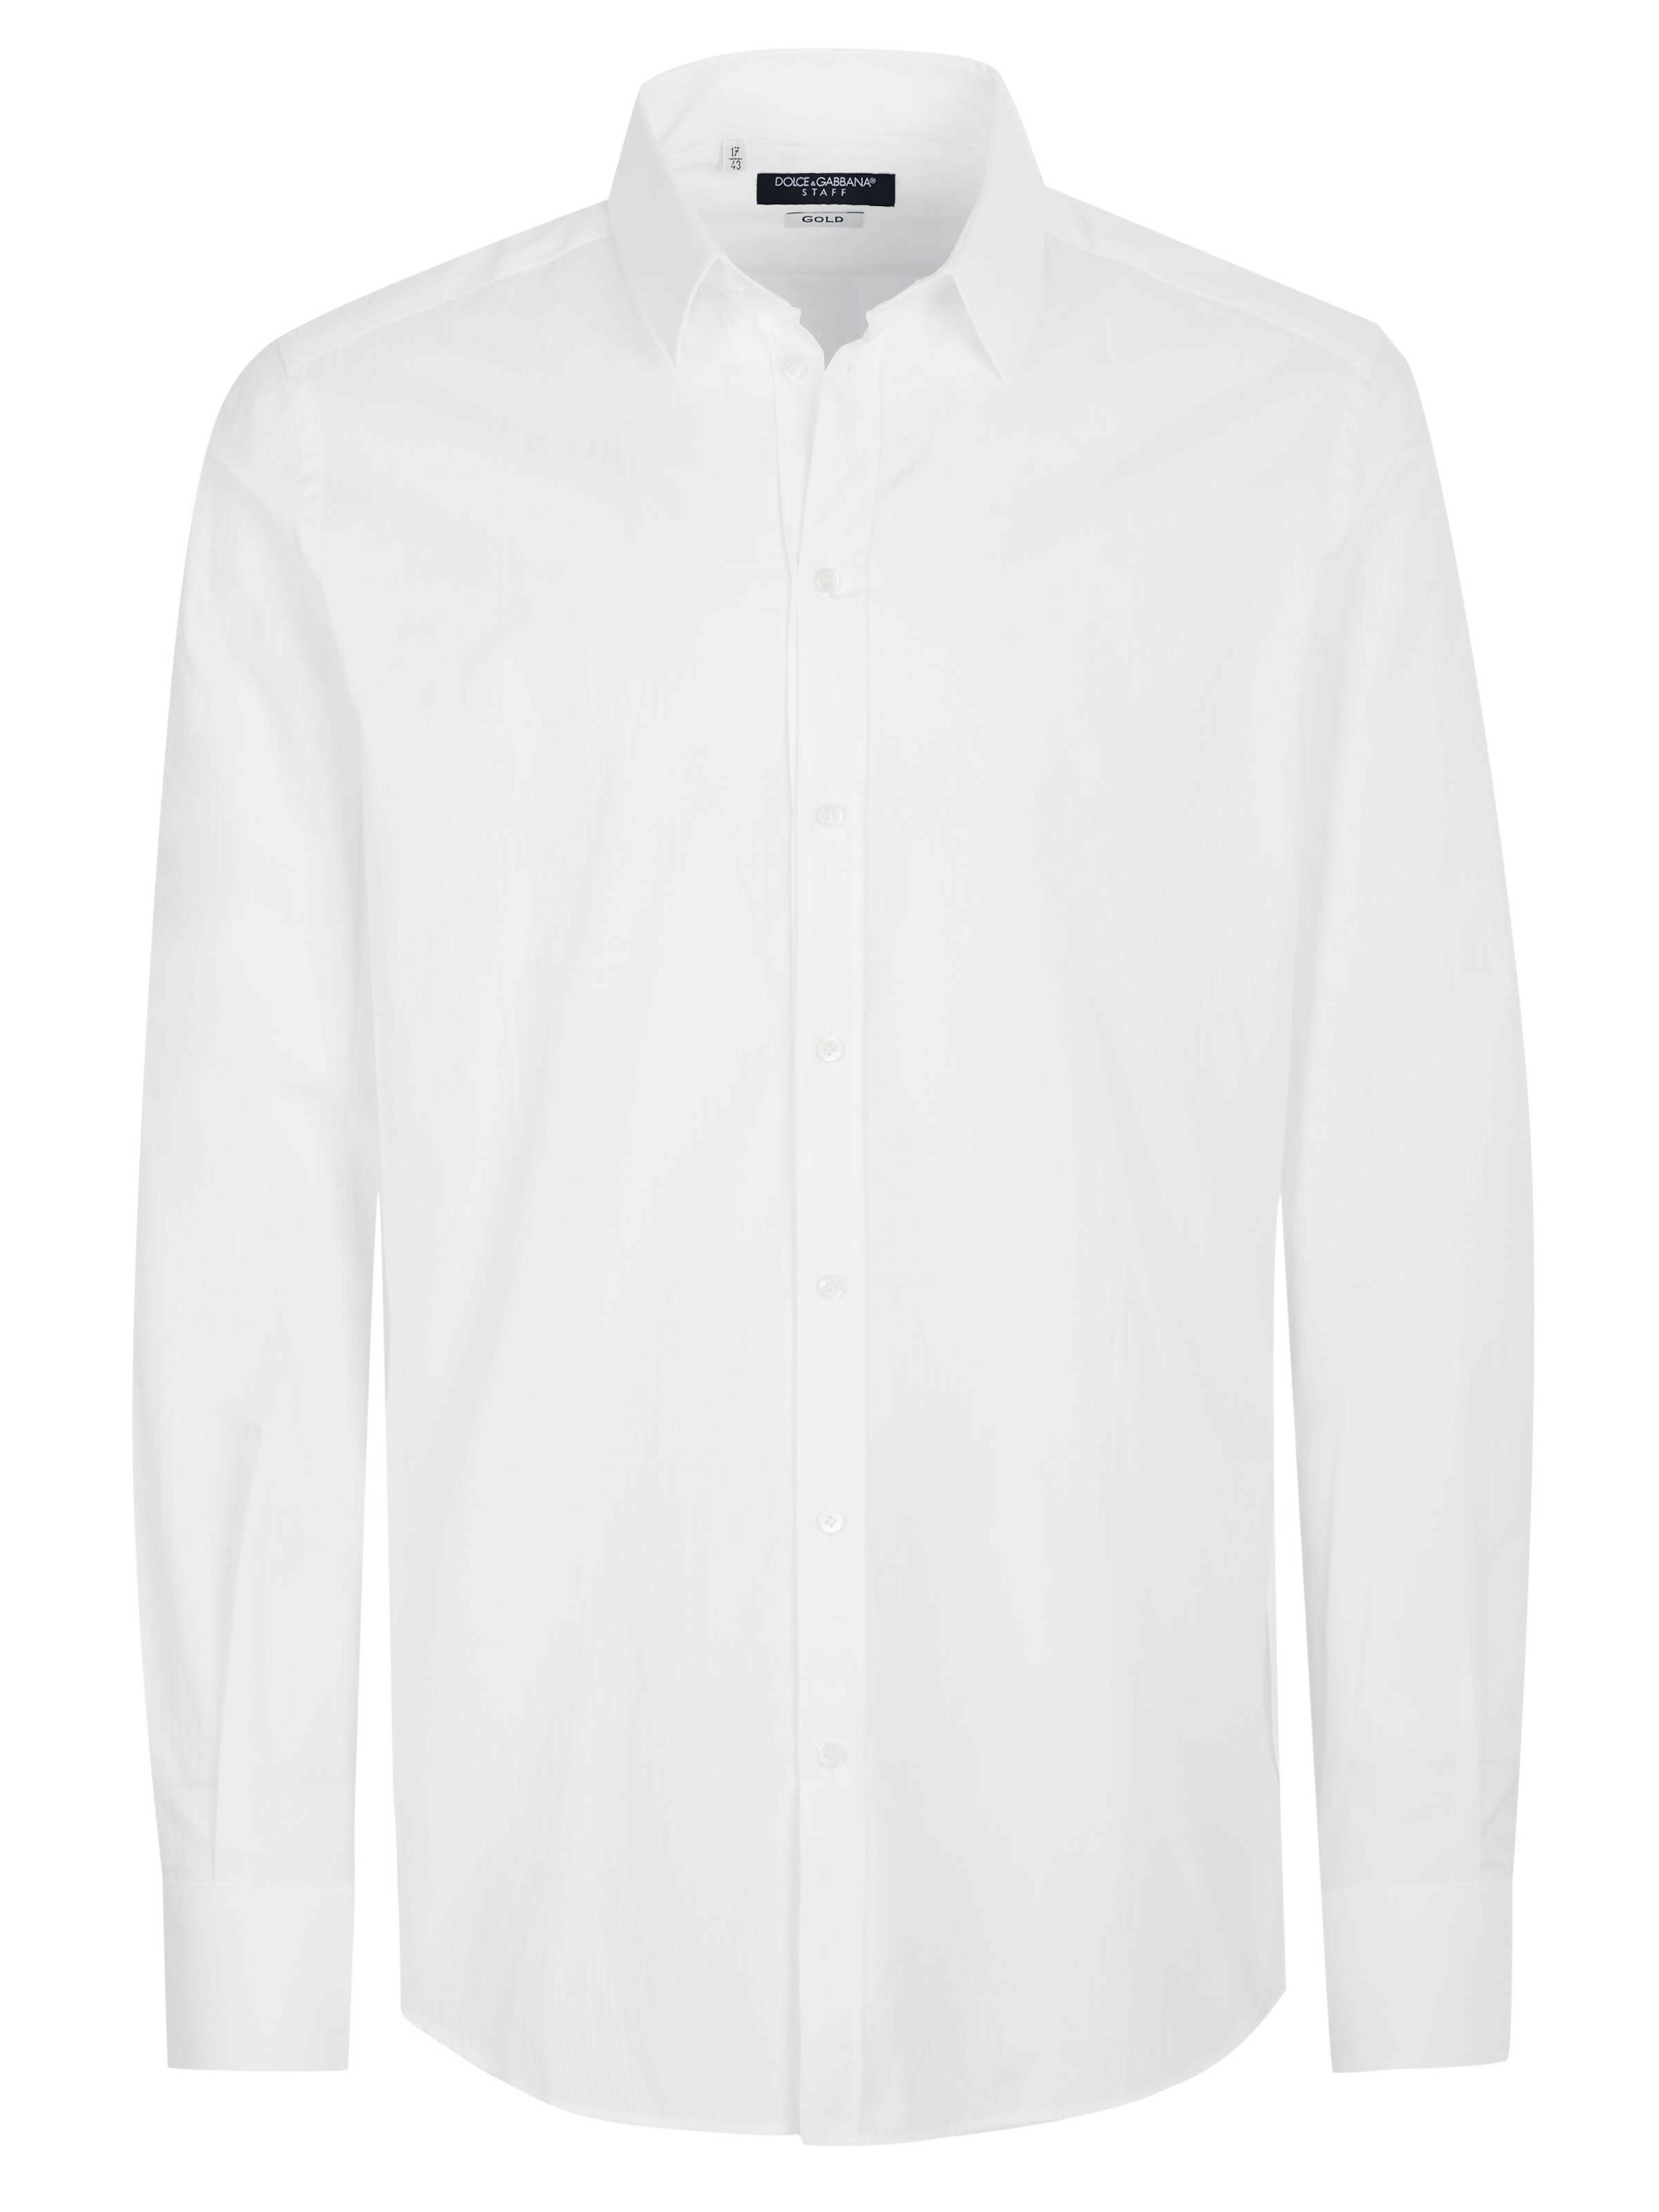 Dolce & Gabbana Shirt White on SALE | Fashionesta